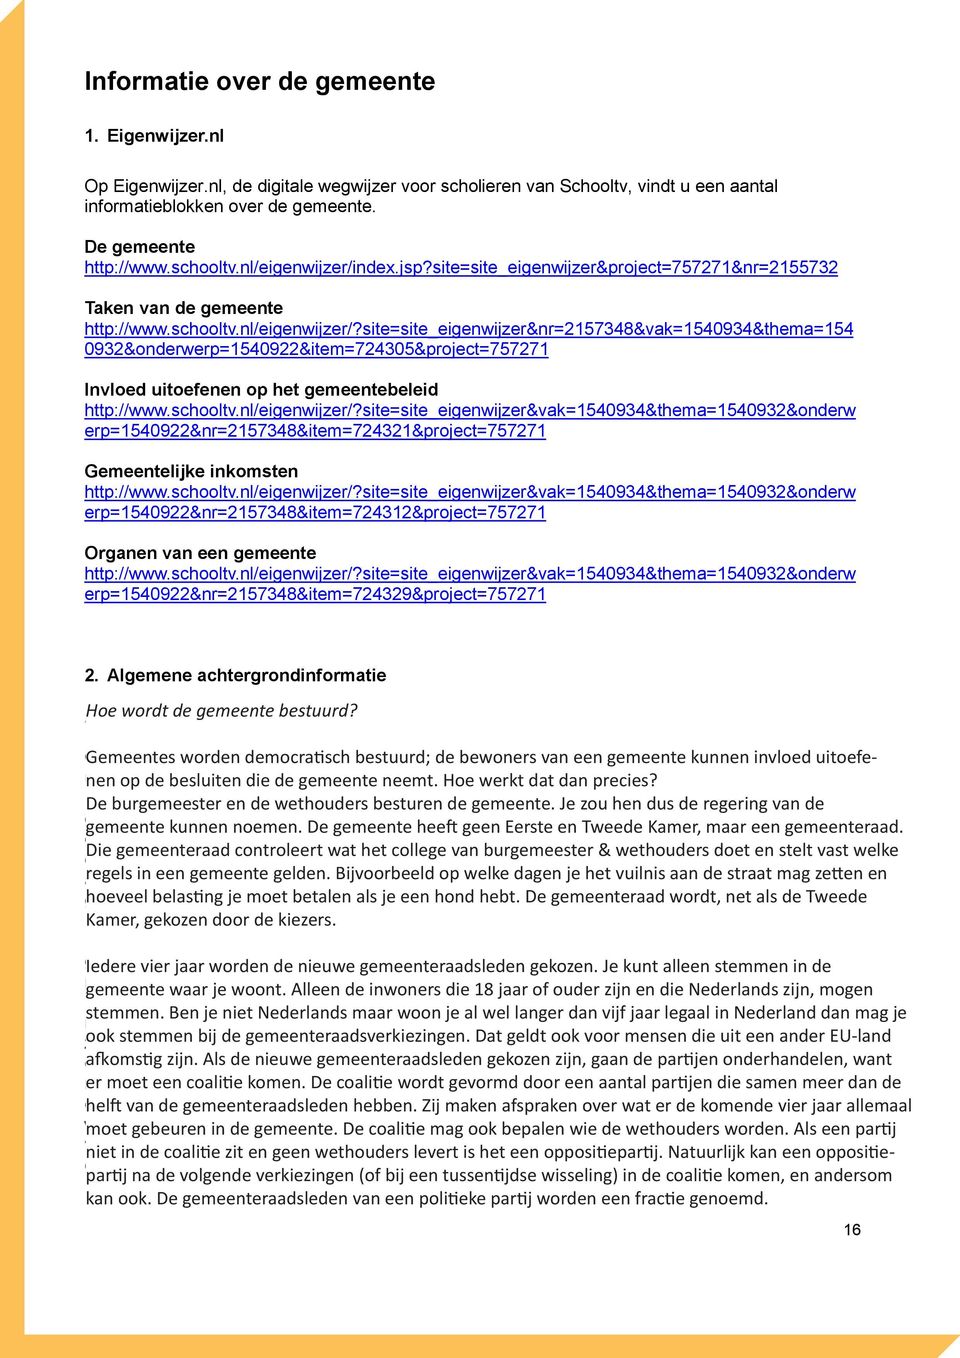 schooltv.nl/eigenwijzer/?site=site_eigenwijzer&vak=1540934&thema=1540932&onderw erp=1540922&nr=2157348&item=724321&project=757271 Gemeentelijke inkomsten http://www.schooltv.nl/eigenwijzer/?site=site_eigenwijzer&vak=1540934&thema=1540932&onderw erp=1540922&nr=2157348&item=724312&project=757271 Organen van een gemeente http://www.